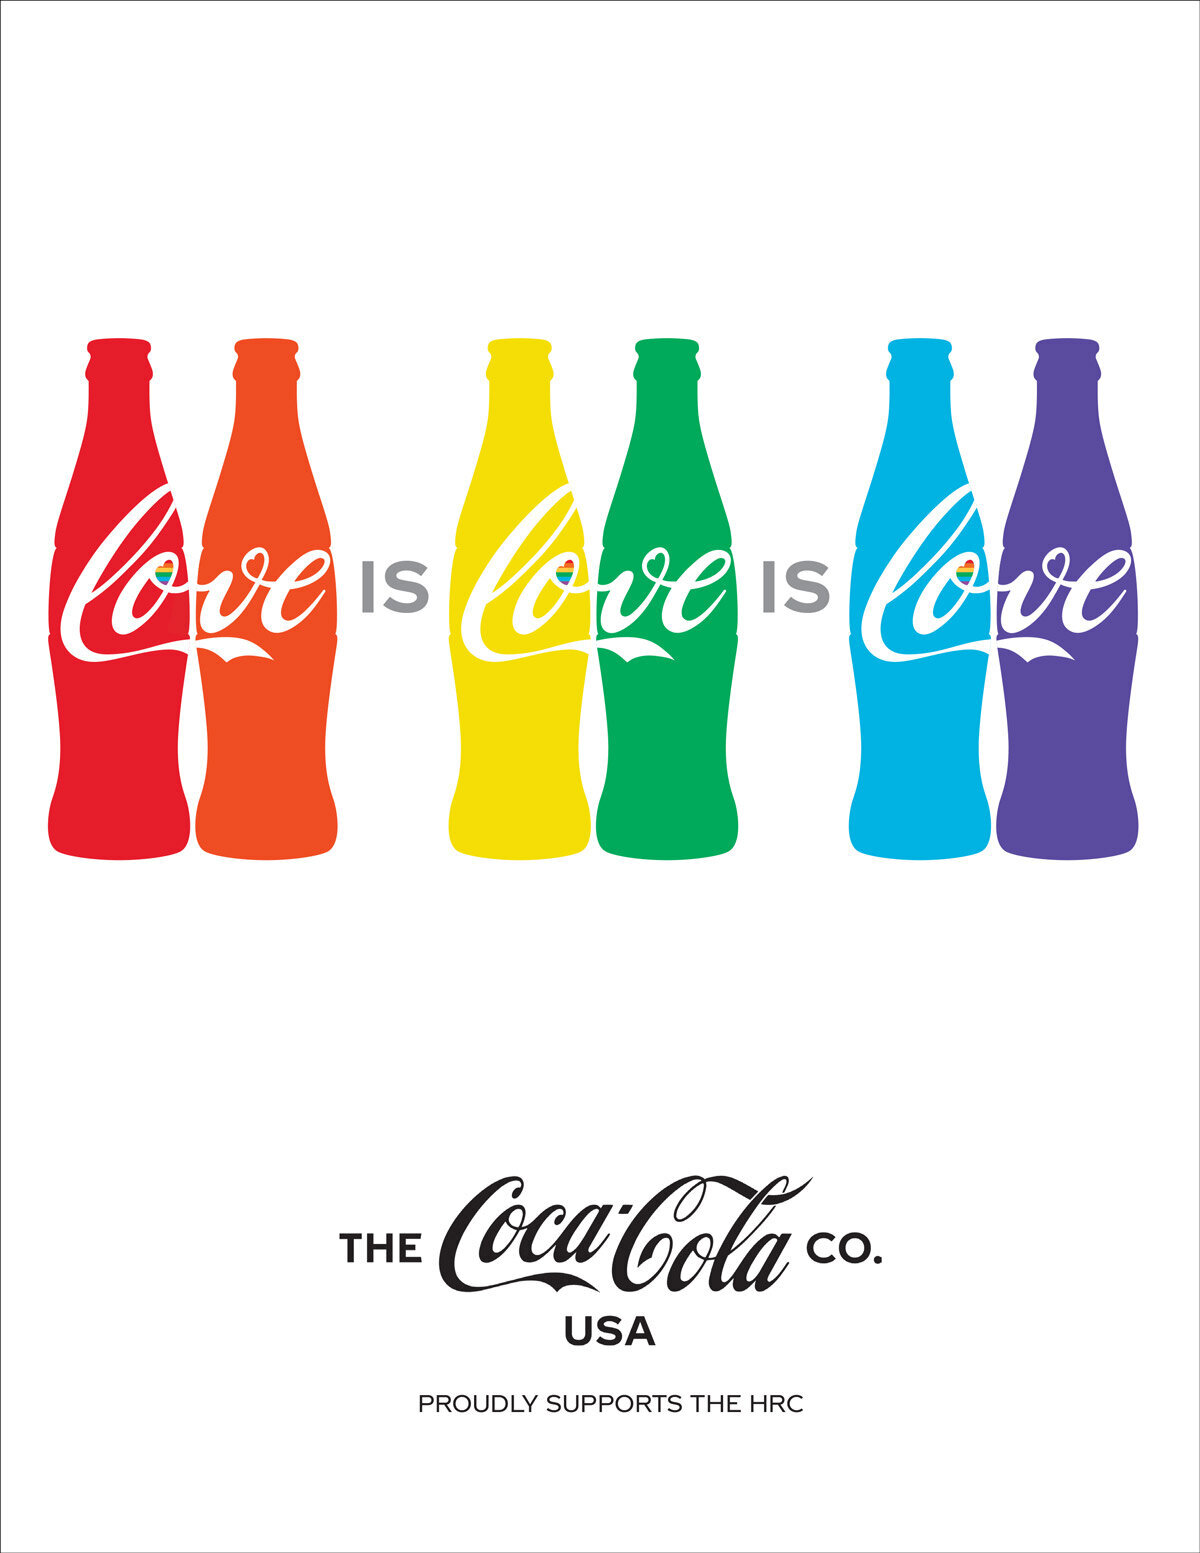 TCCC-National-LGBTQ-Ads-080119-FINAL